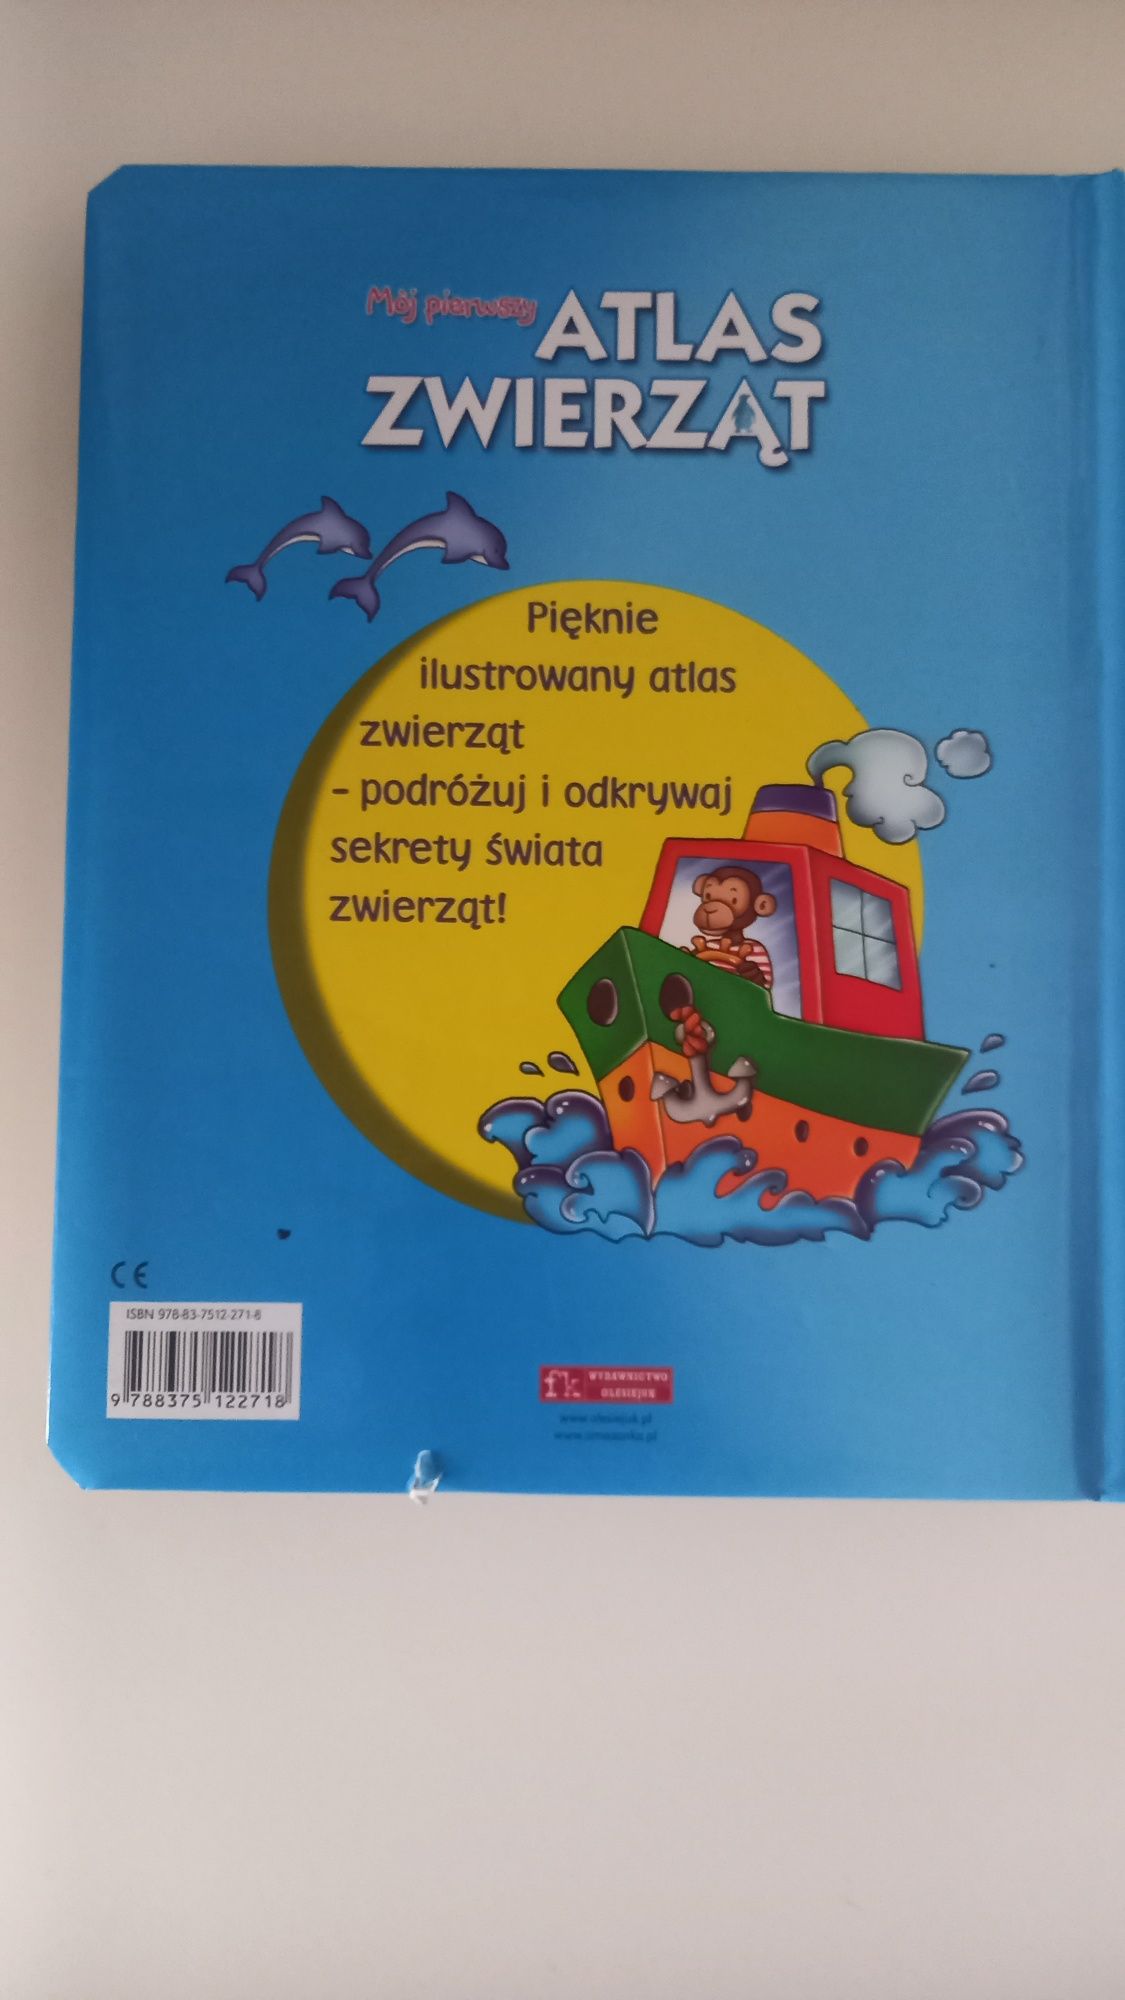 Atlas zwierząt dla dzieci